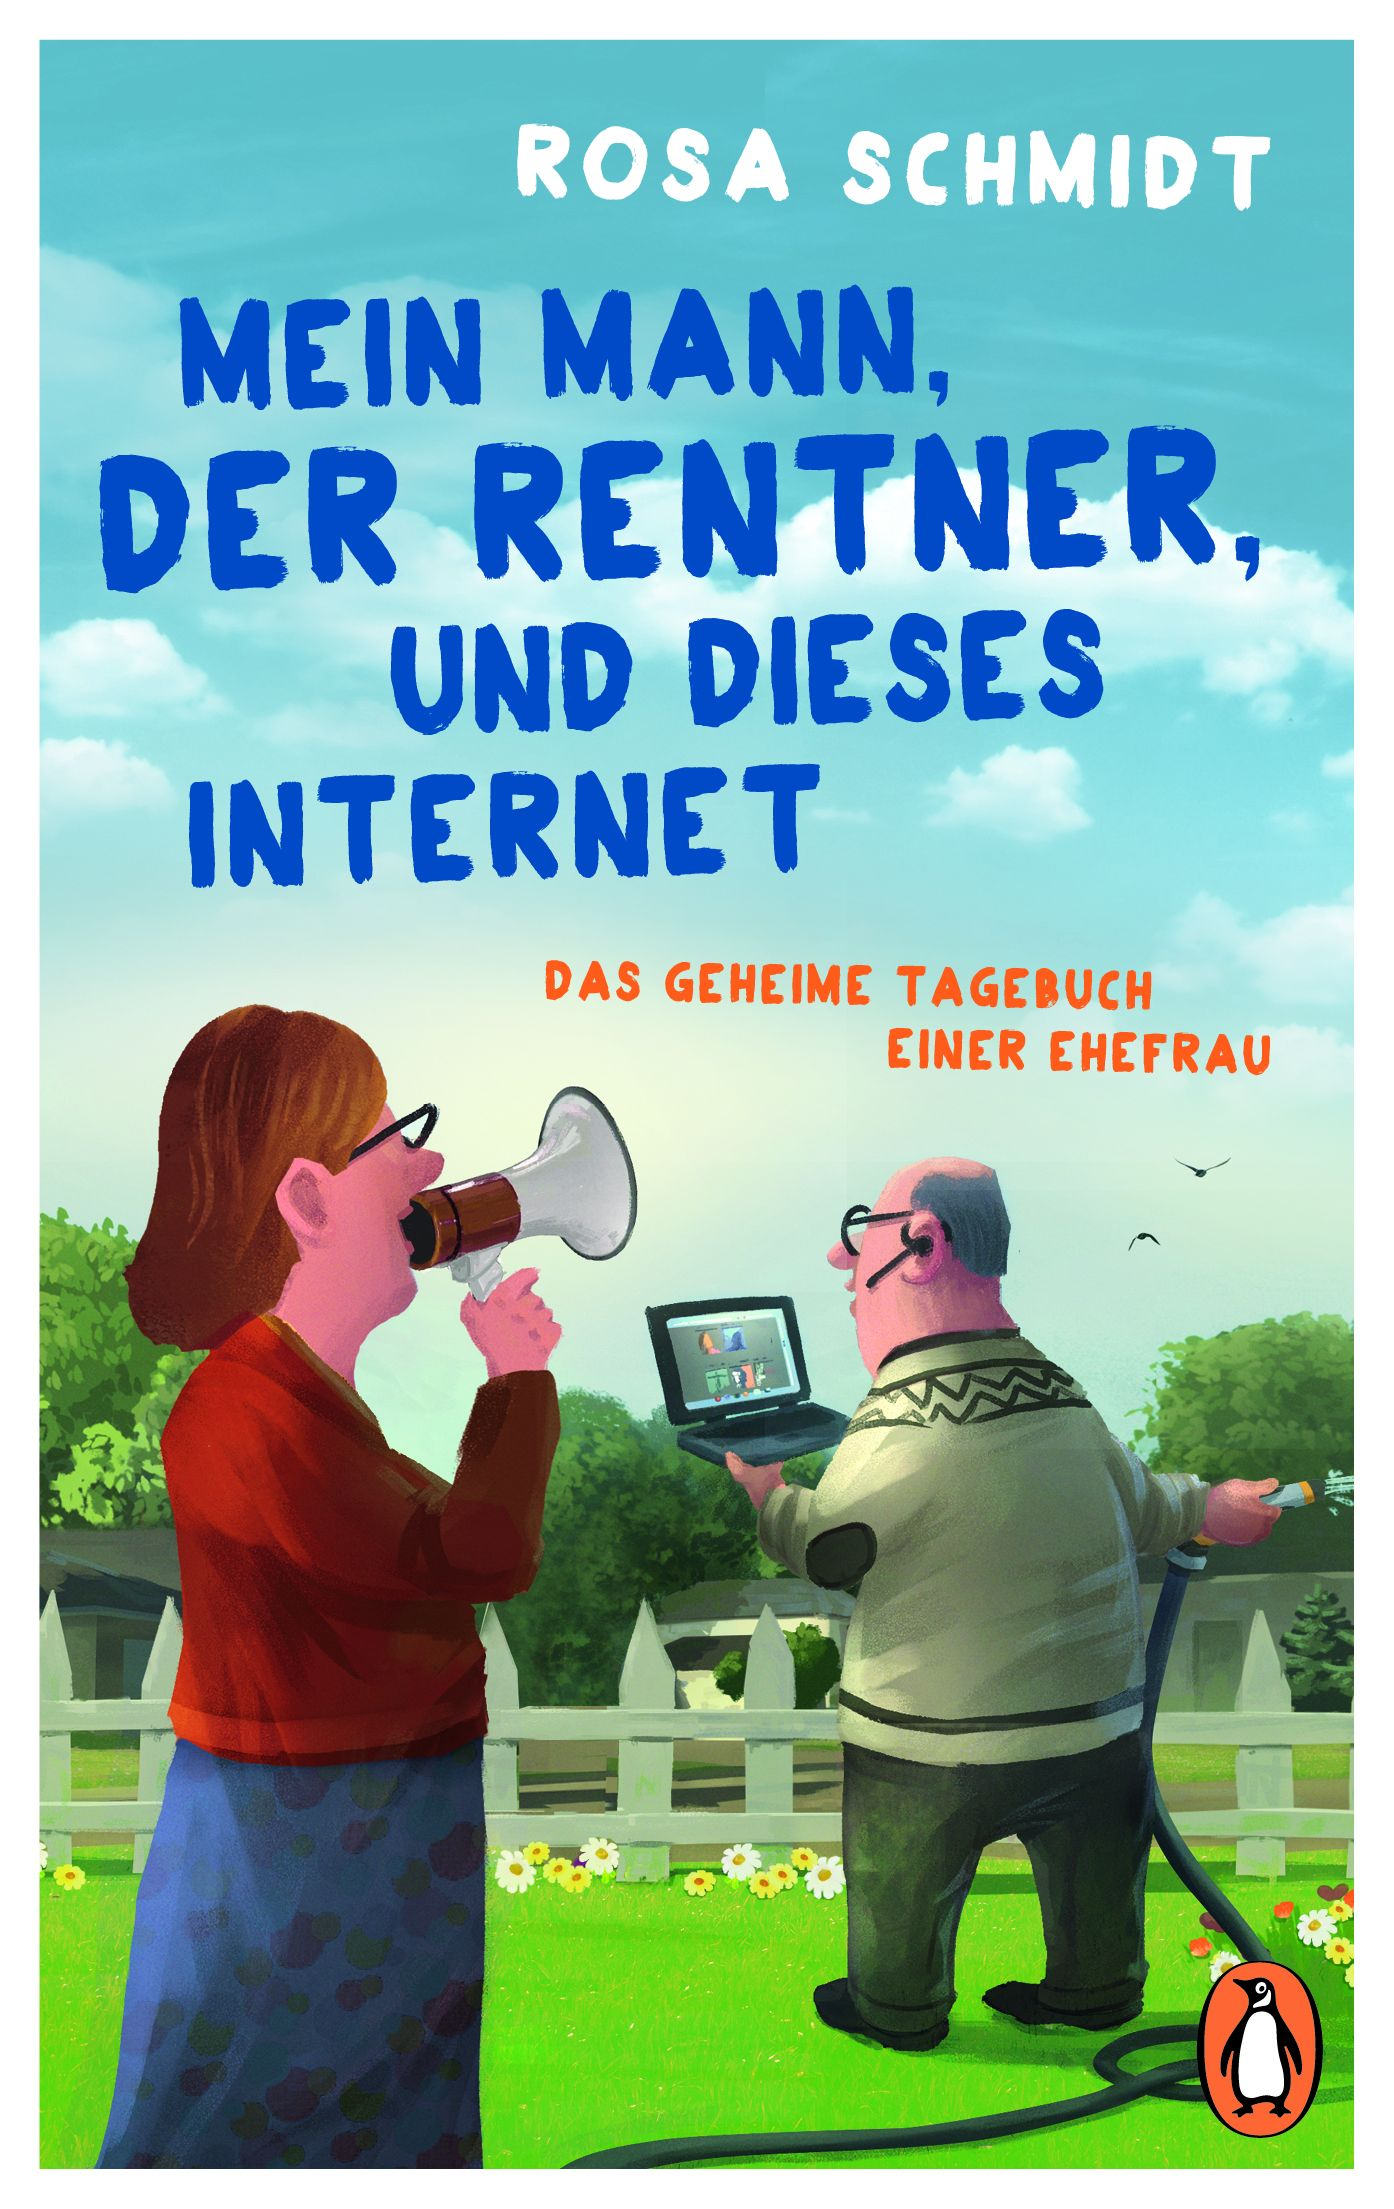 Buchcover: Rosa Schmidt: Mein Mann, der Rentner, und dieses Internet